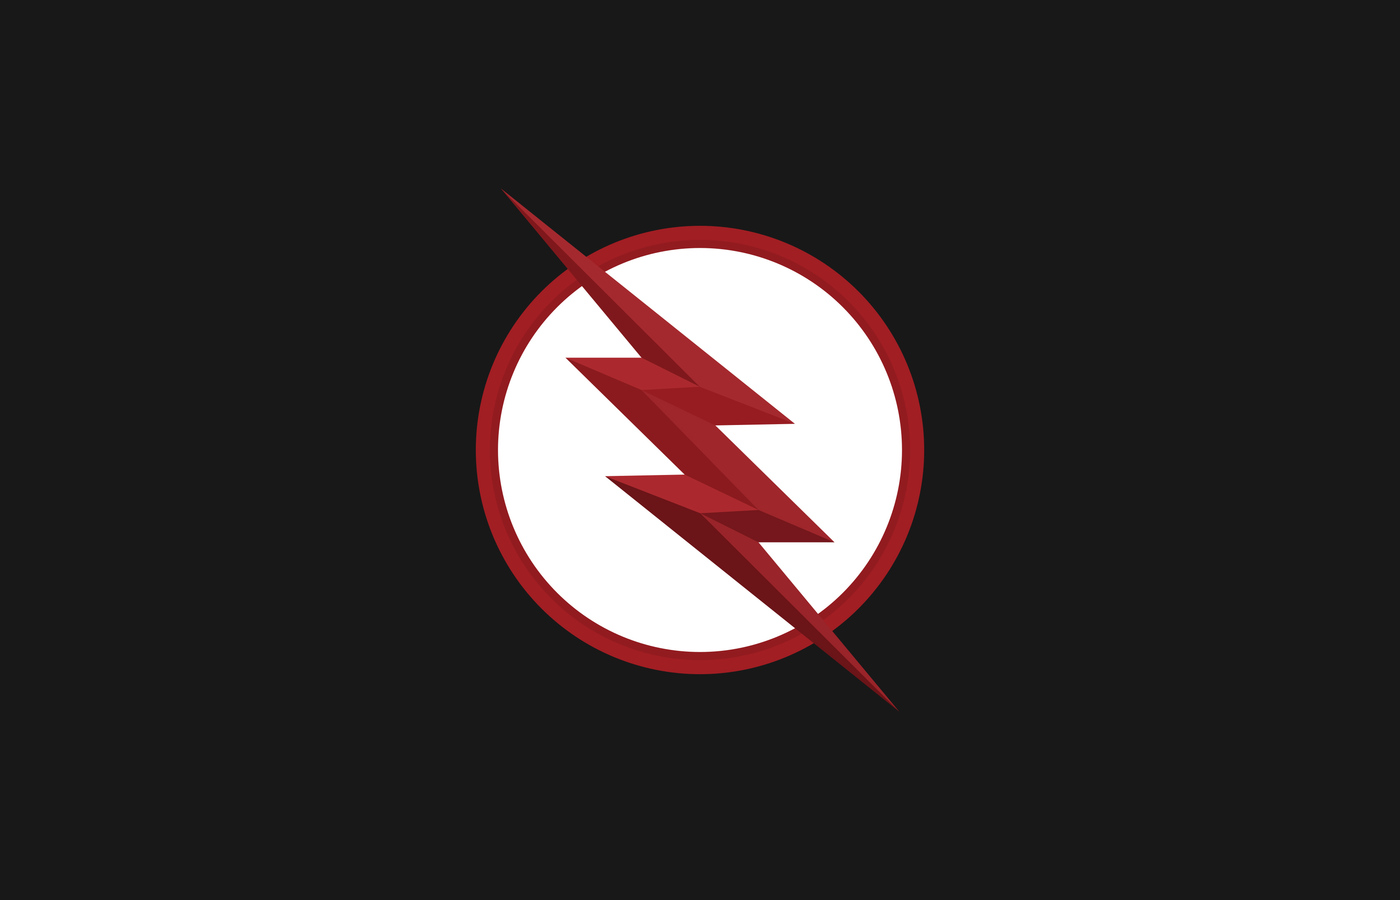 flash-logo-minimal-black-4k-p0.jpg